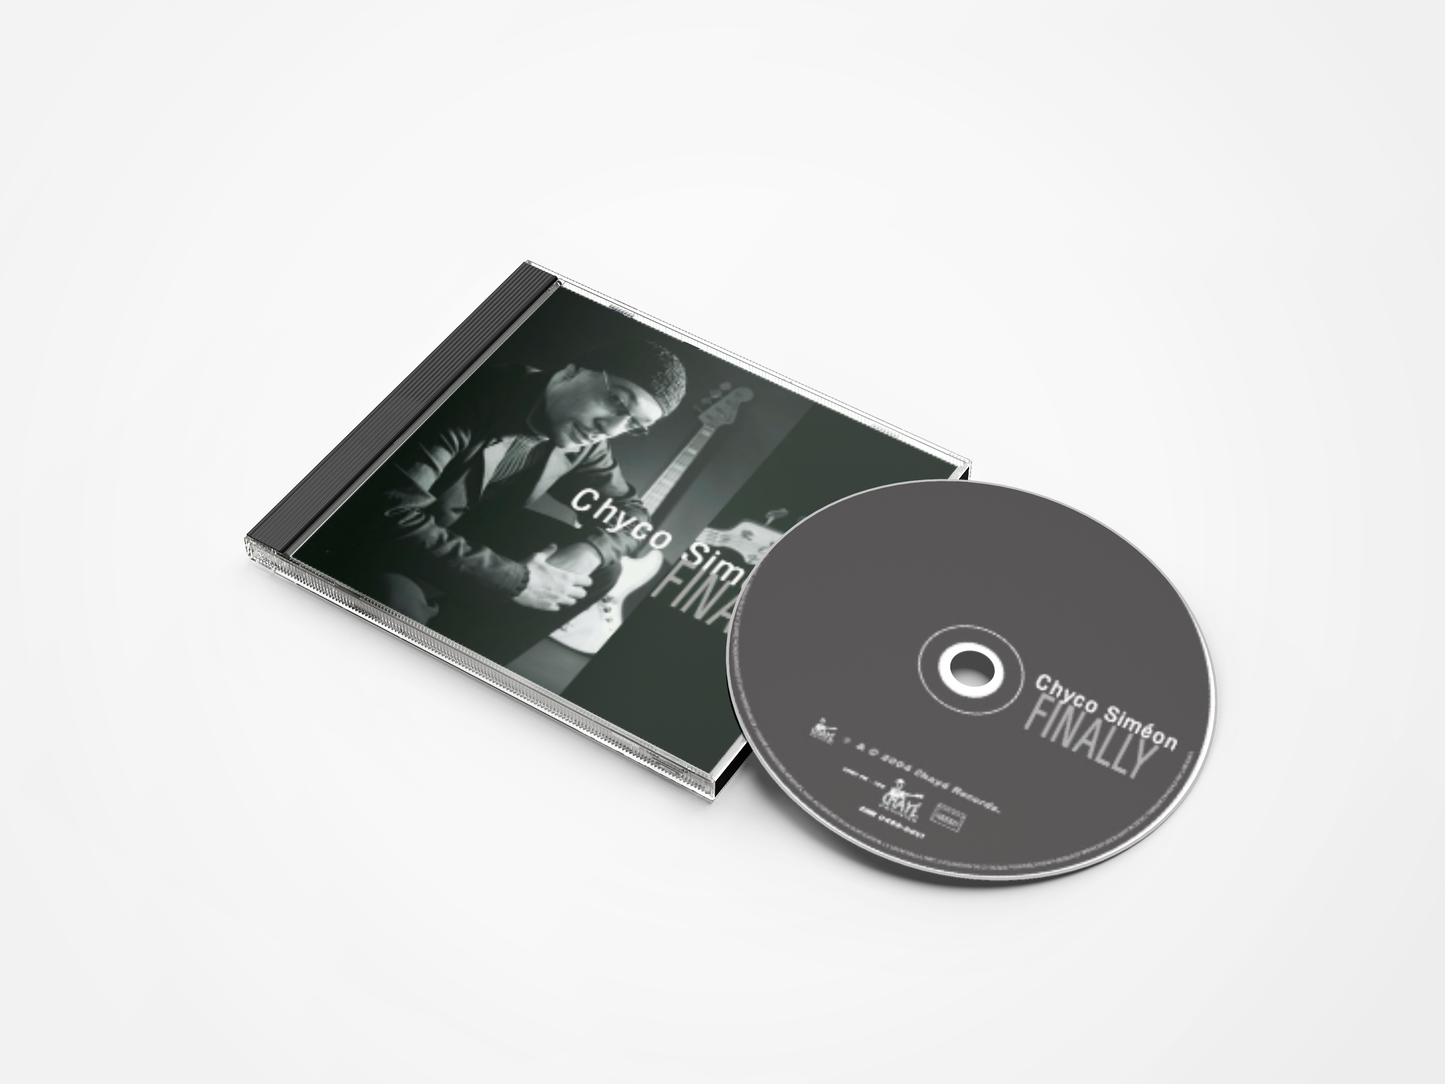 Chyco Siméon - Finally (CD)